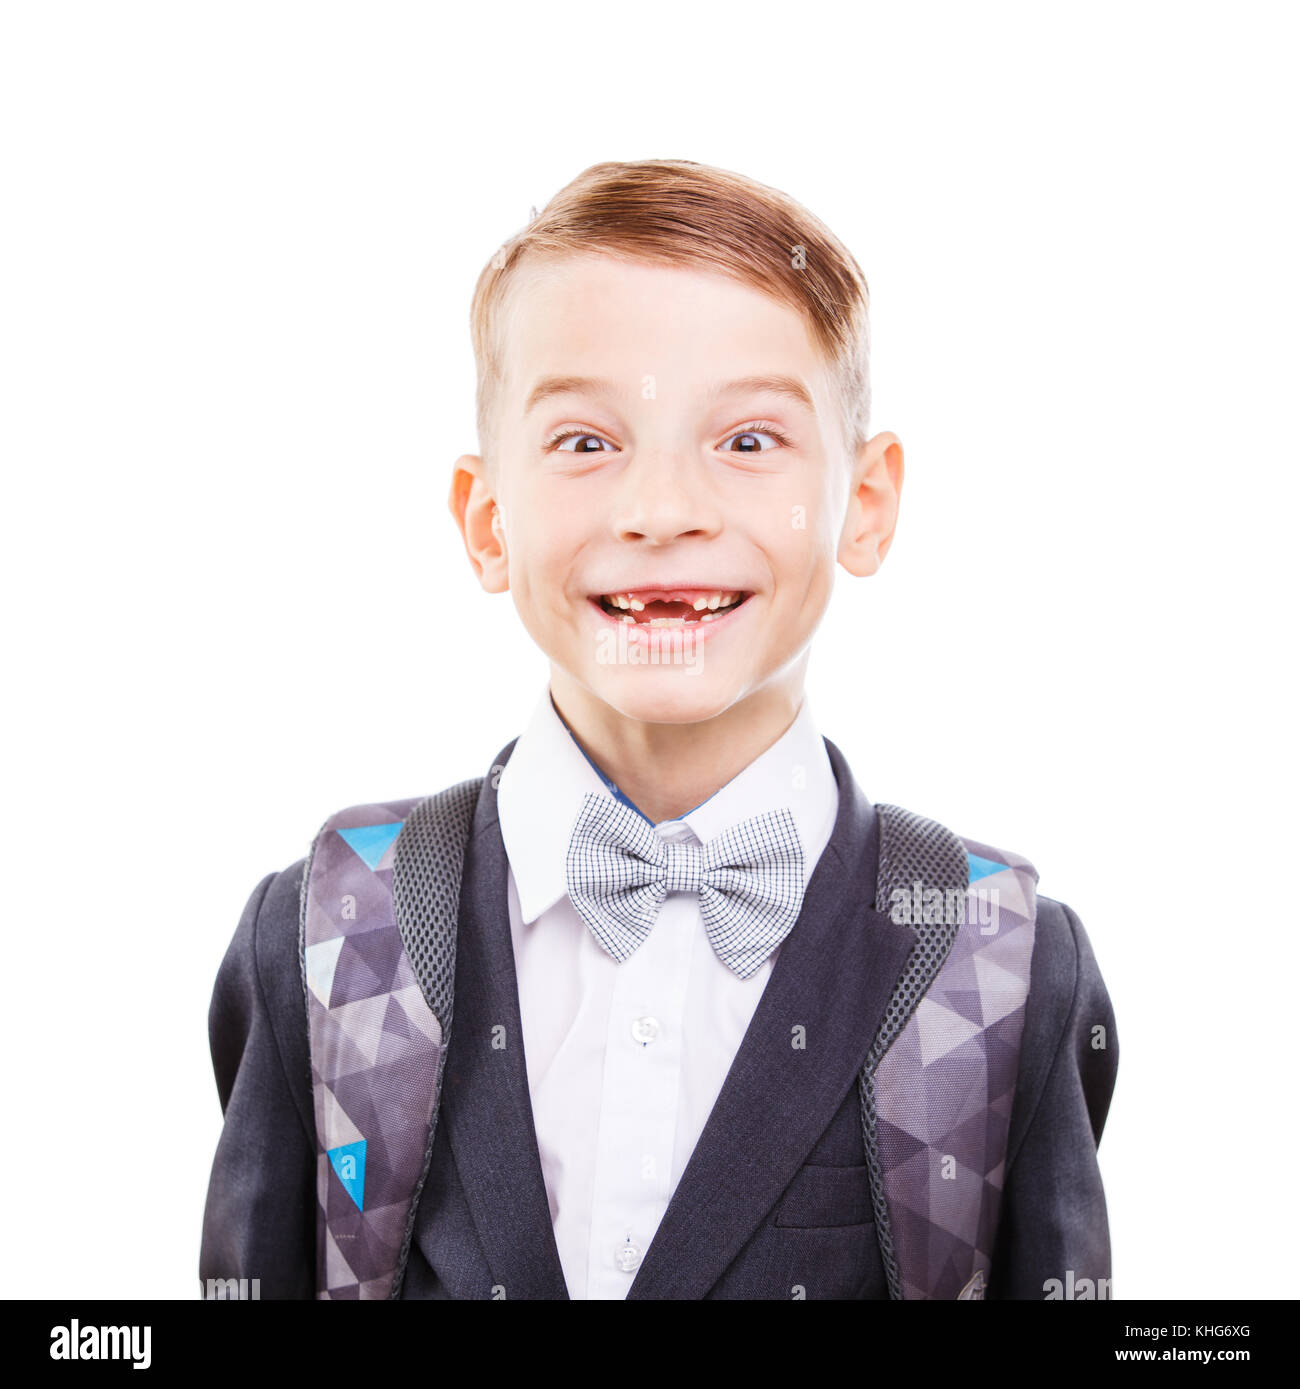 Giovani carini scuola primaria studente ingannare intorno a. Giovani carino schoolboy mostra teethless sorriso isolati su sfondo bianco Foto Stock